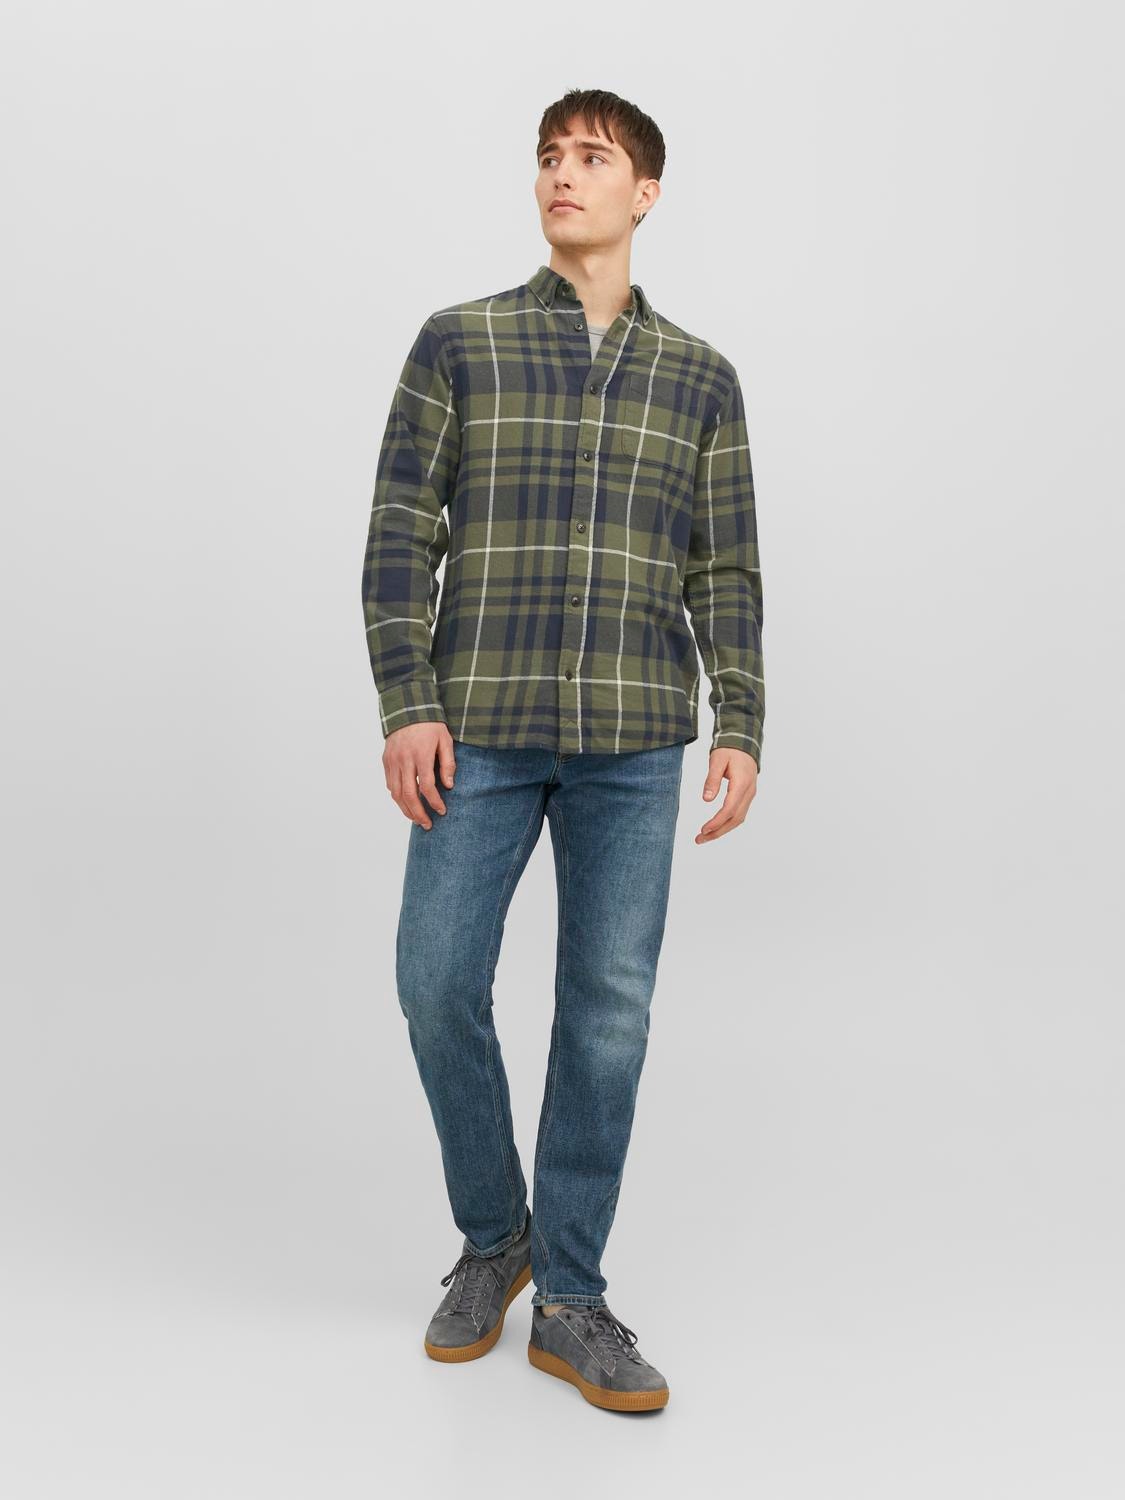 Jack & Jones Comfort Fit Karo marškiniai -Grape Leaf - 12238032